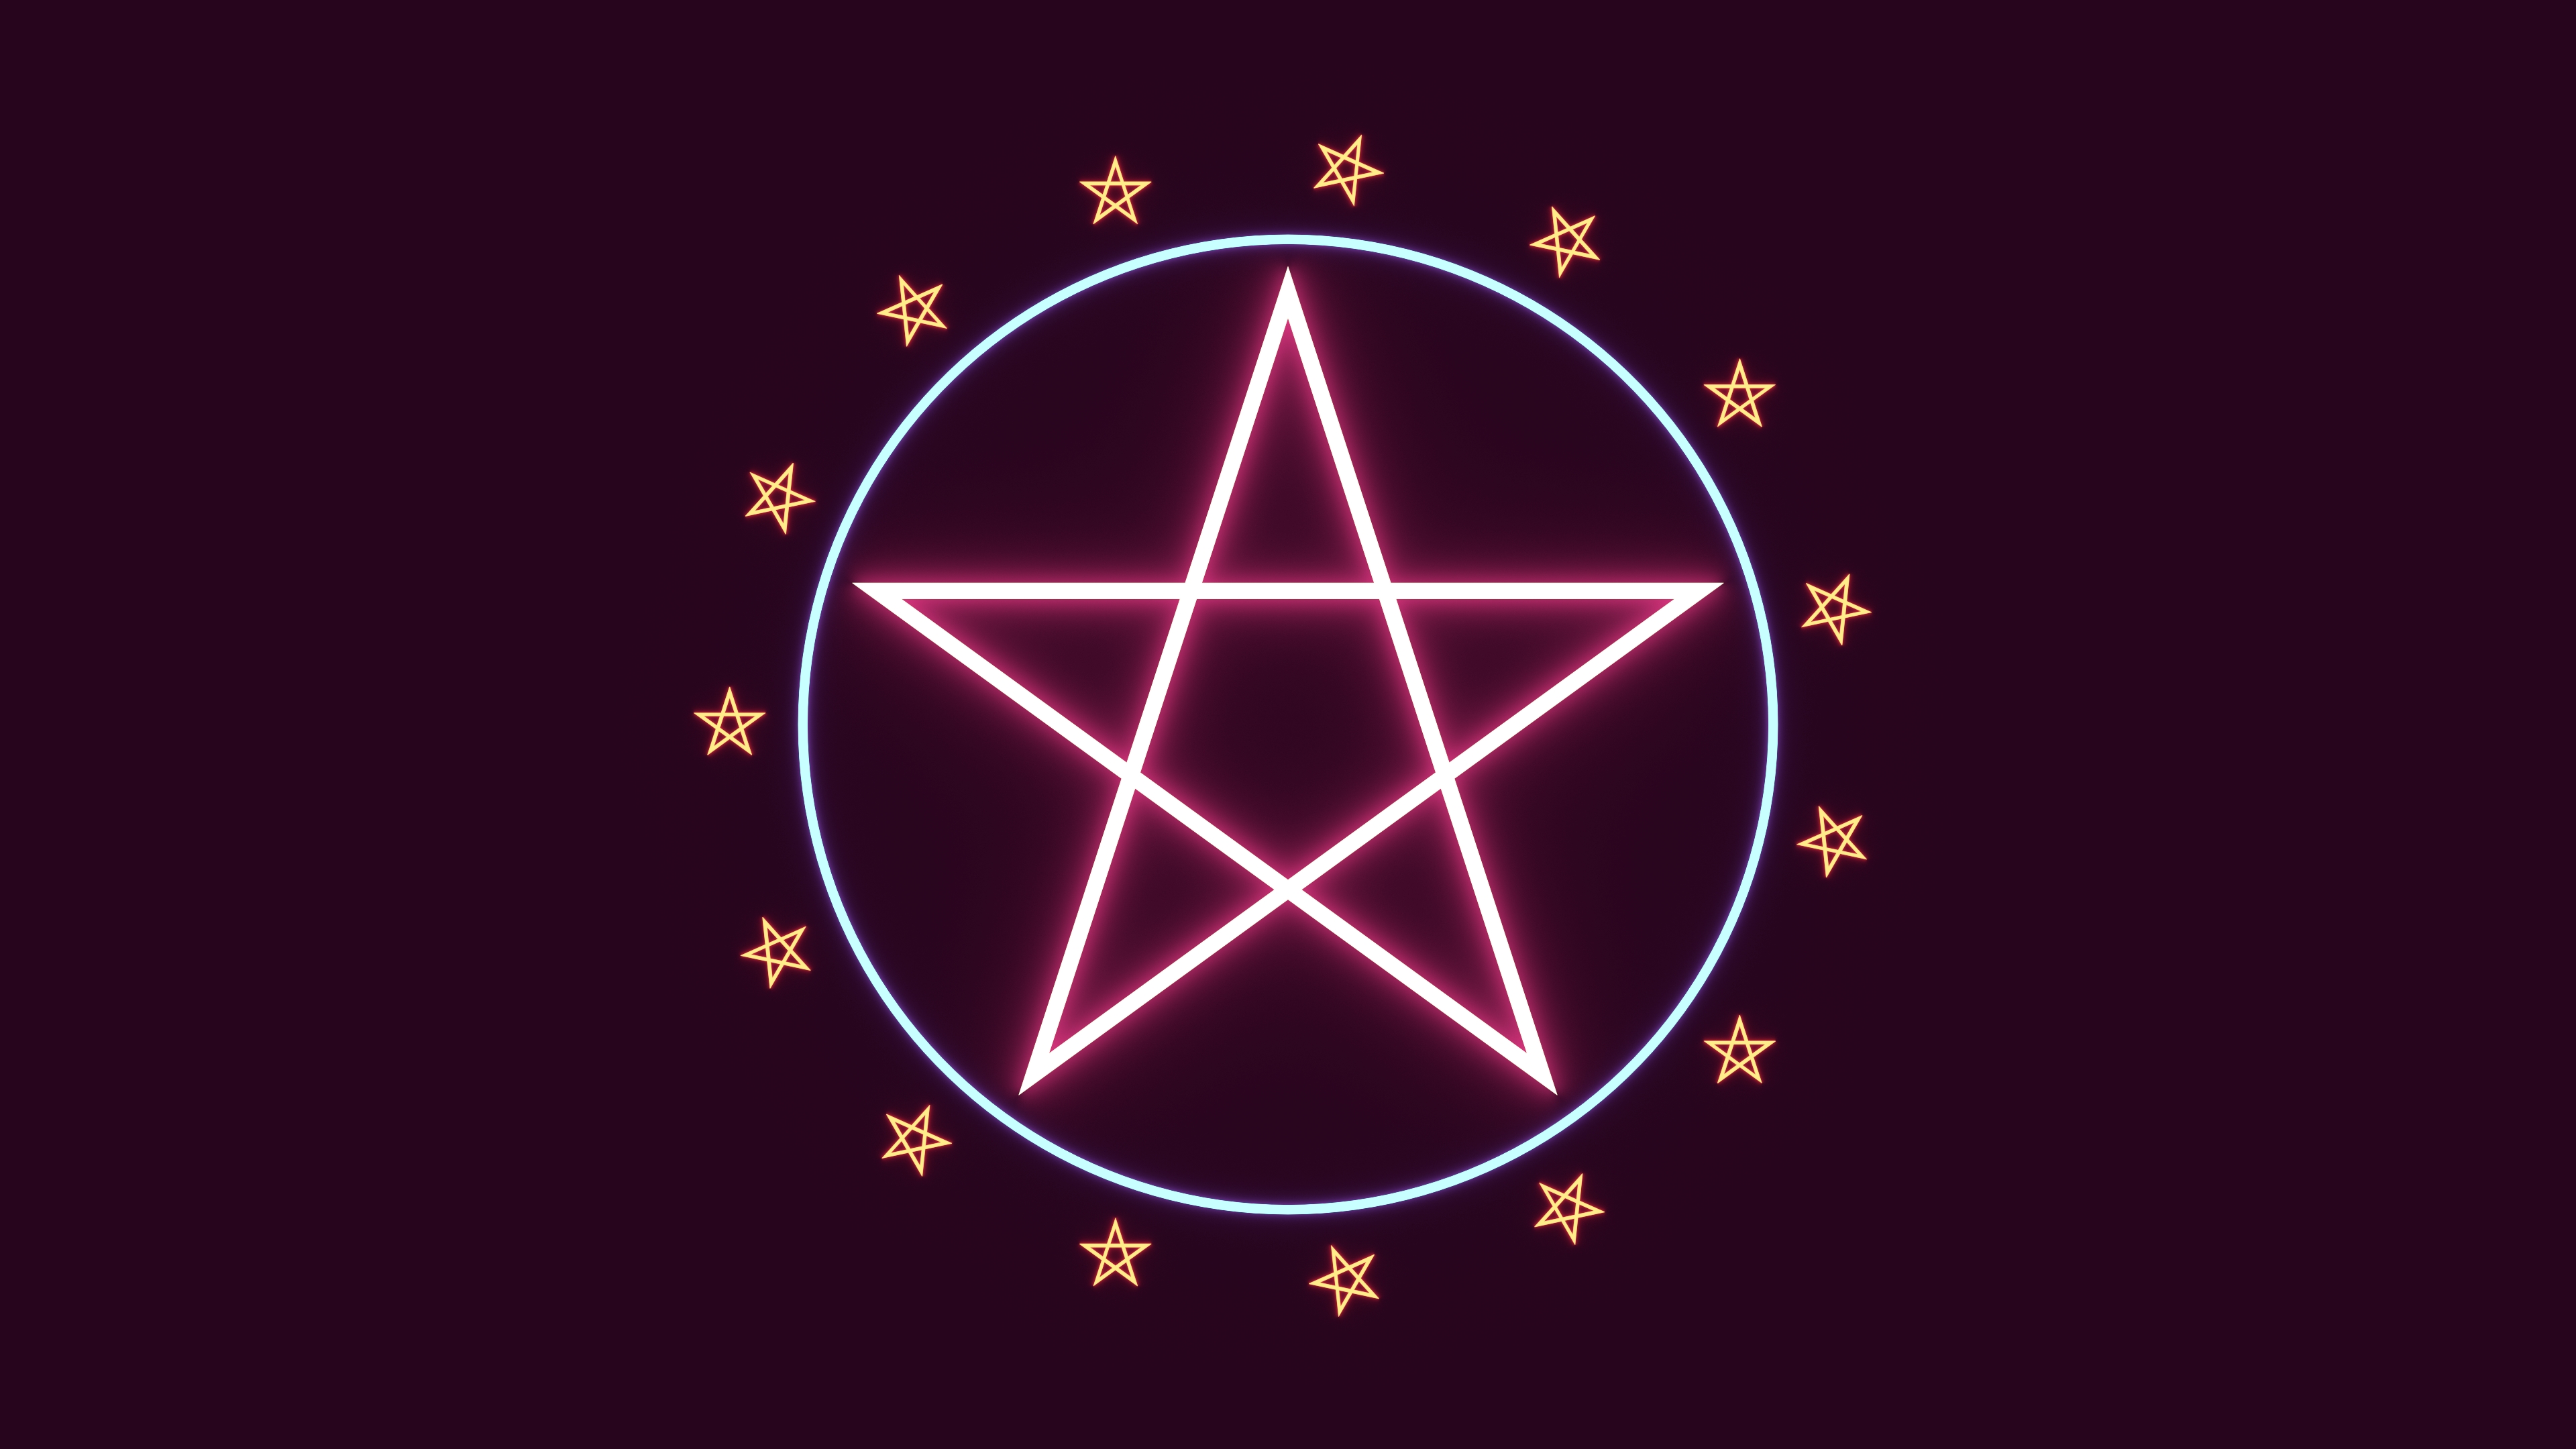 Пятиконечная звезда пентаграмма